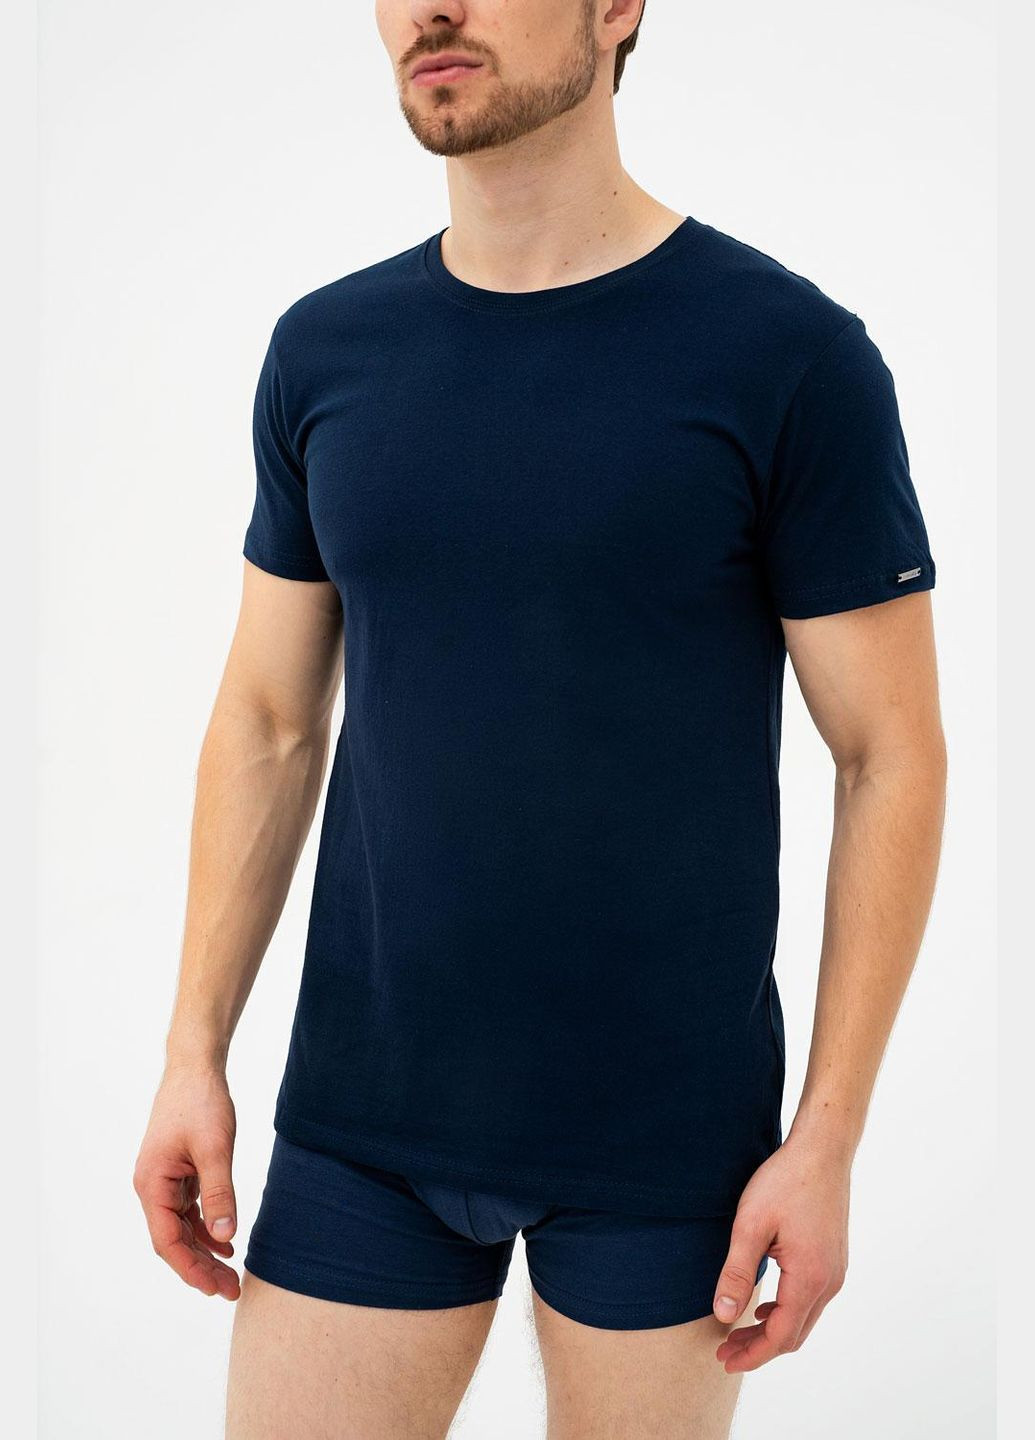 Синяя футболка мужская 3xl navy blue (синий) (арт 202 new) Cornette